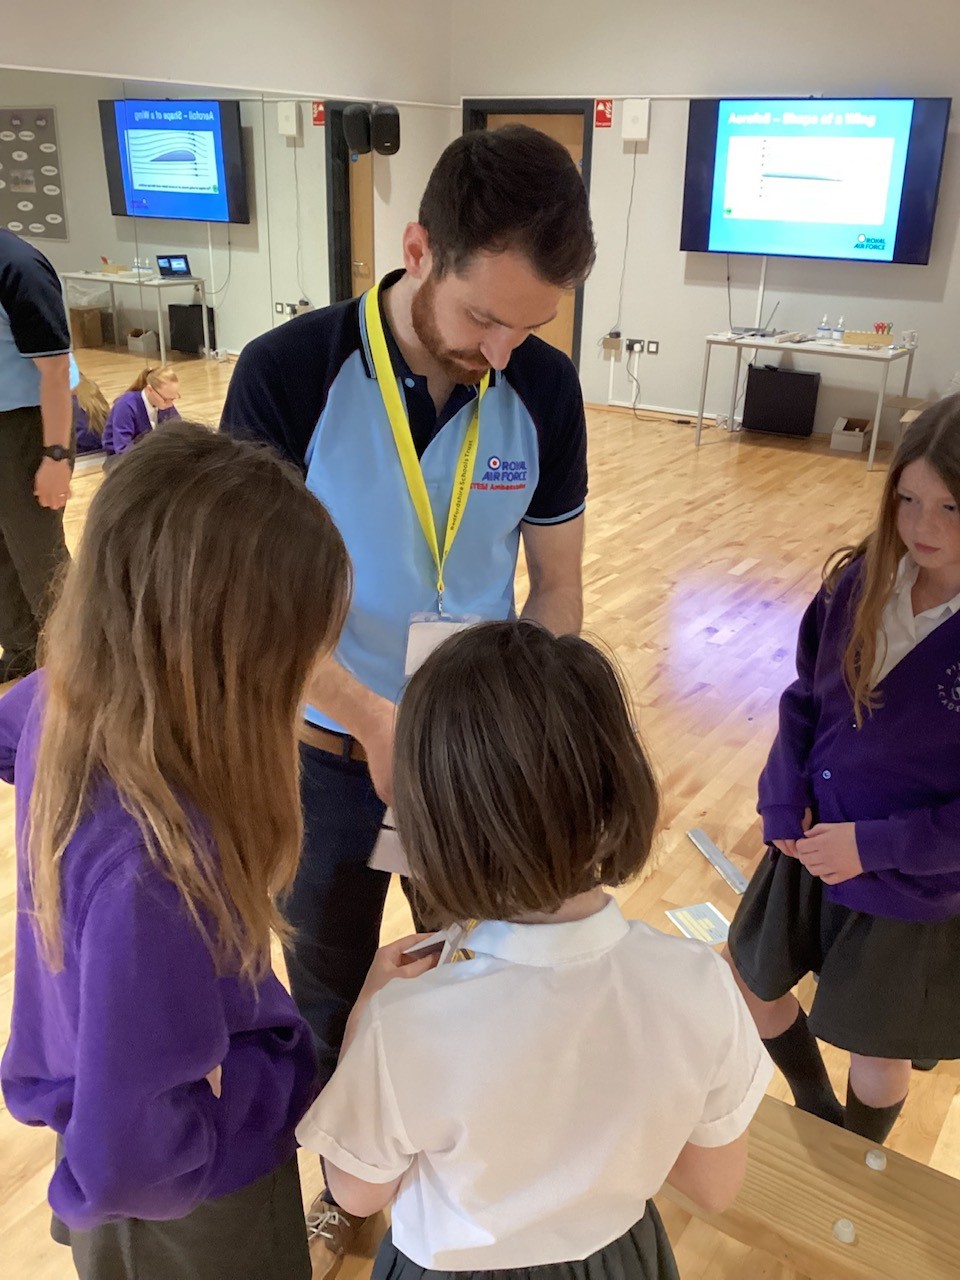  RAF STEM Ambassador works with school children.